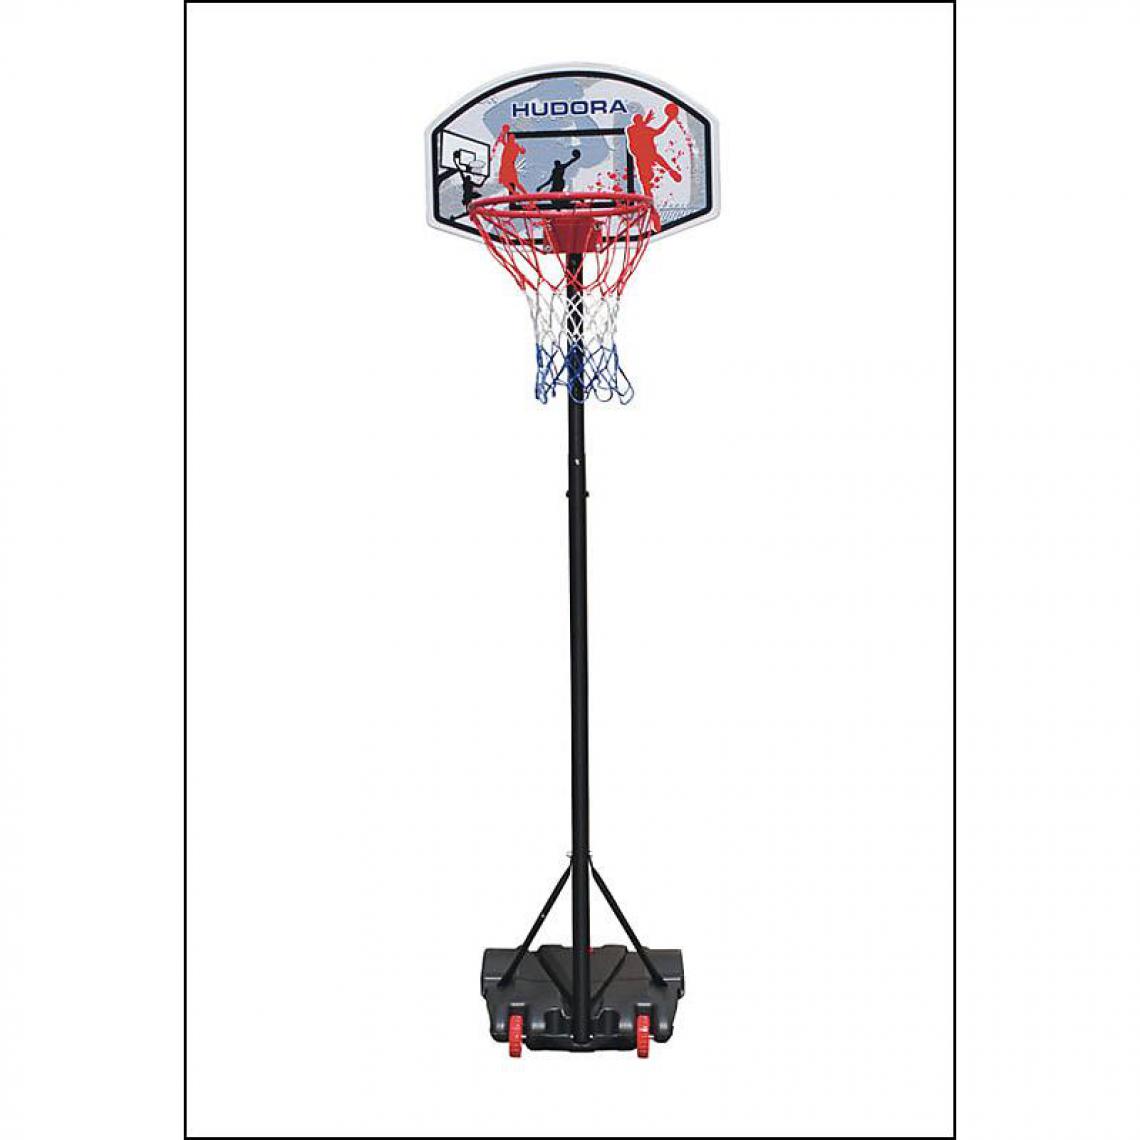 Hudora - Hudora 71655 - Panier de basket transportable pour enfants - Jeux de récréation